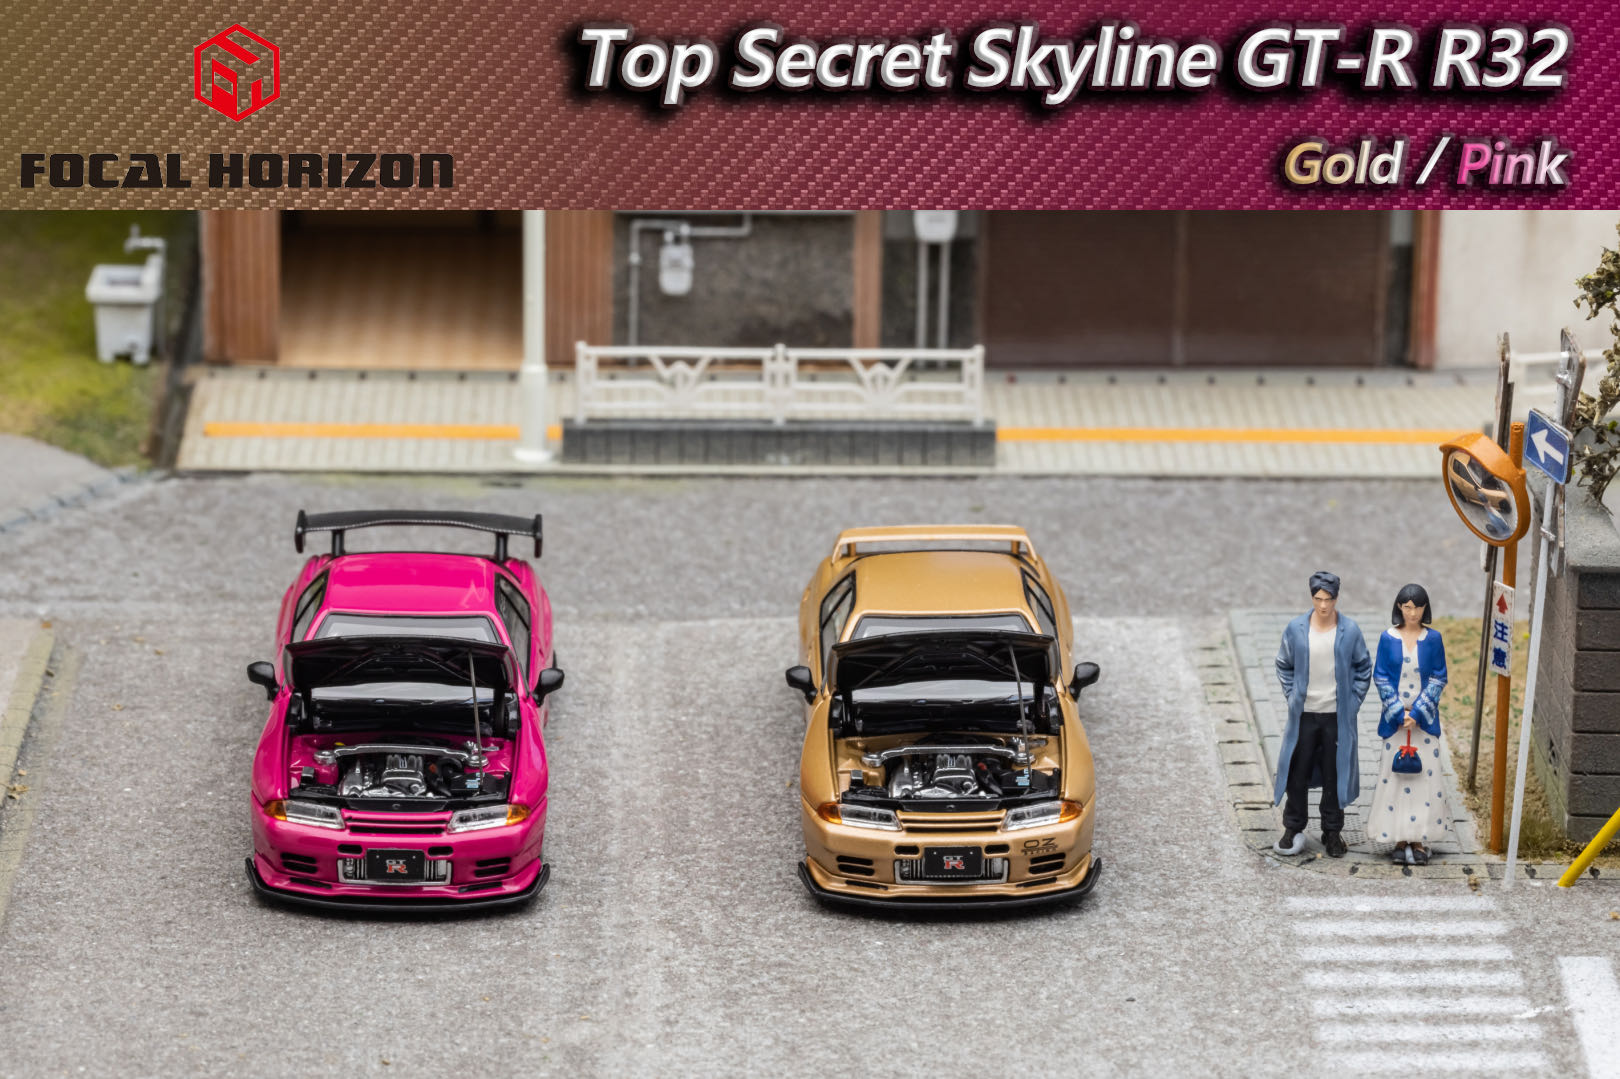 [PDS]FH 1:64尼桑GT-R 3代R32 Top Secret VR32前盖可开合金车模-图3